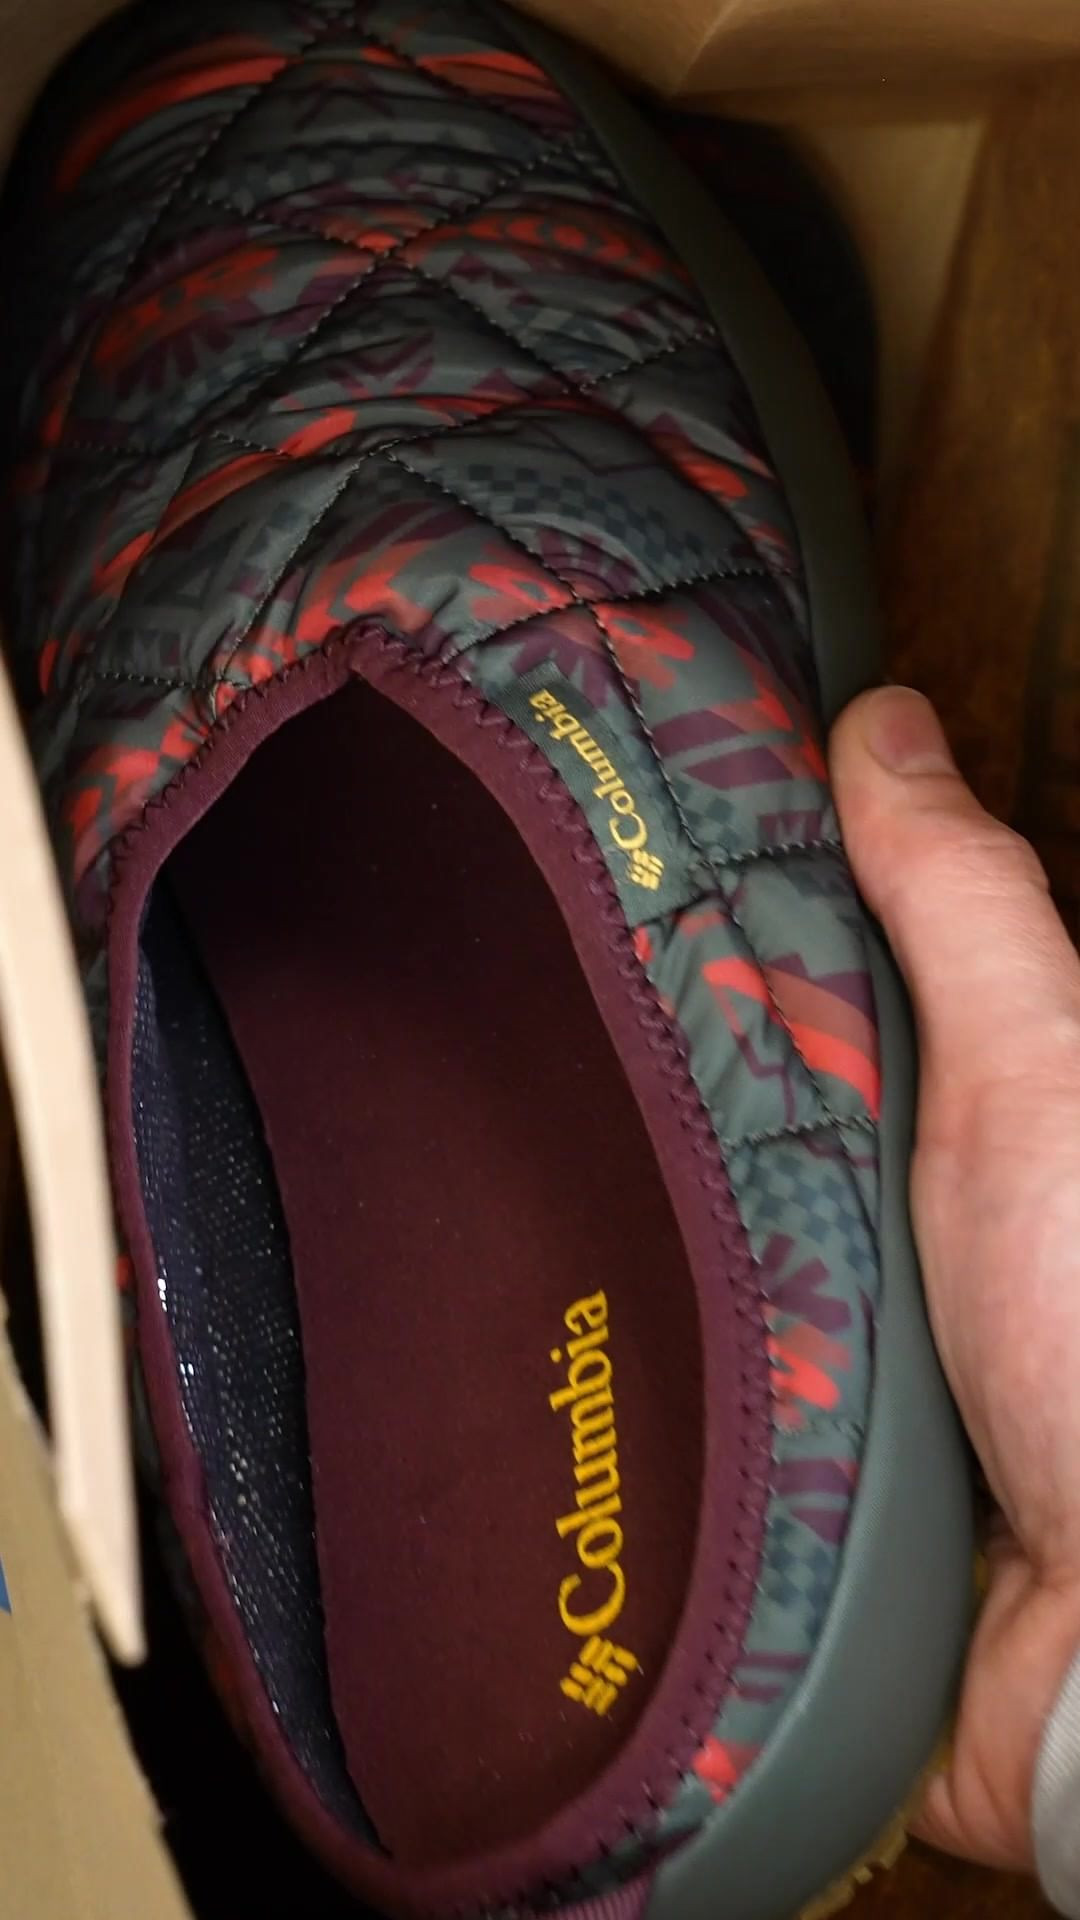 Tyhle papuče jsou fakt střely 💥 – teplé, pohodlné a ten design? Tak ten fakt můžeme. 💁‍♂️ 

#Columbia #papuce